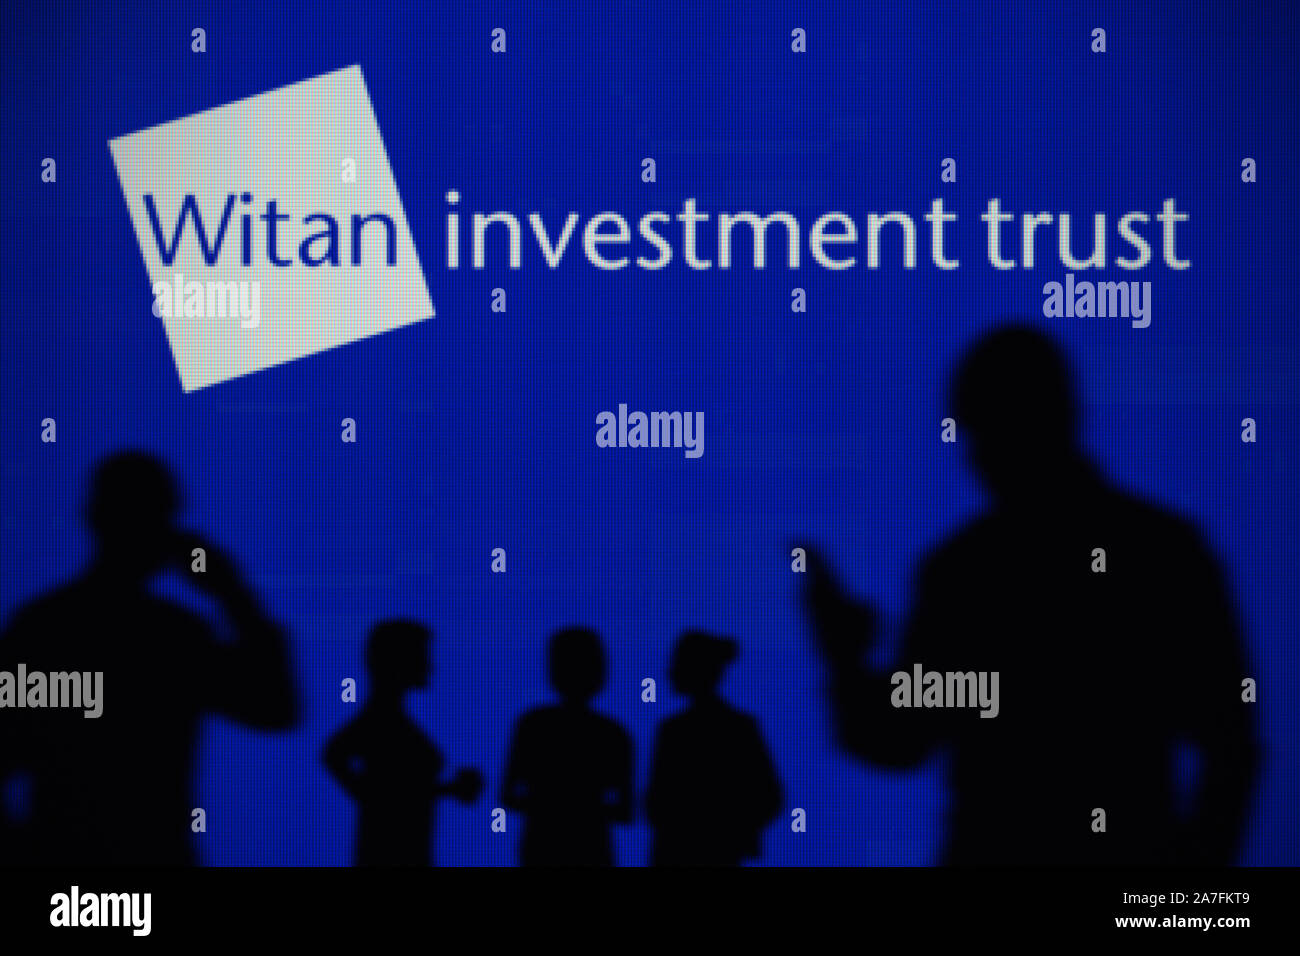 Die Witan Investment Trust Logo ist auf einen LED-Bildschirm im Hintergrund, während eine Silhouette Person ein Smartphone verwendet (nur redaktionelle Nutzung) Stockfoto